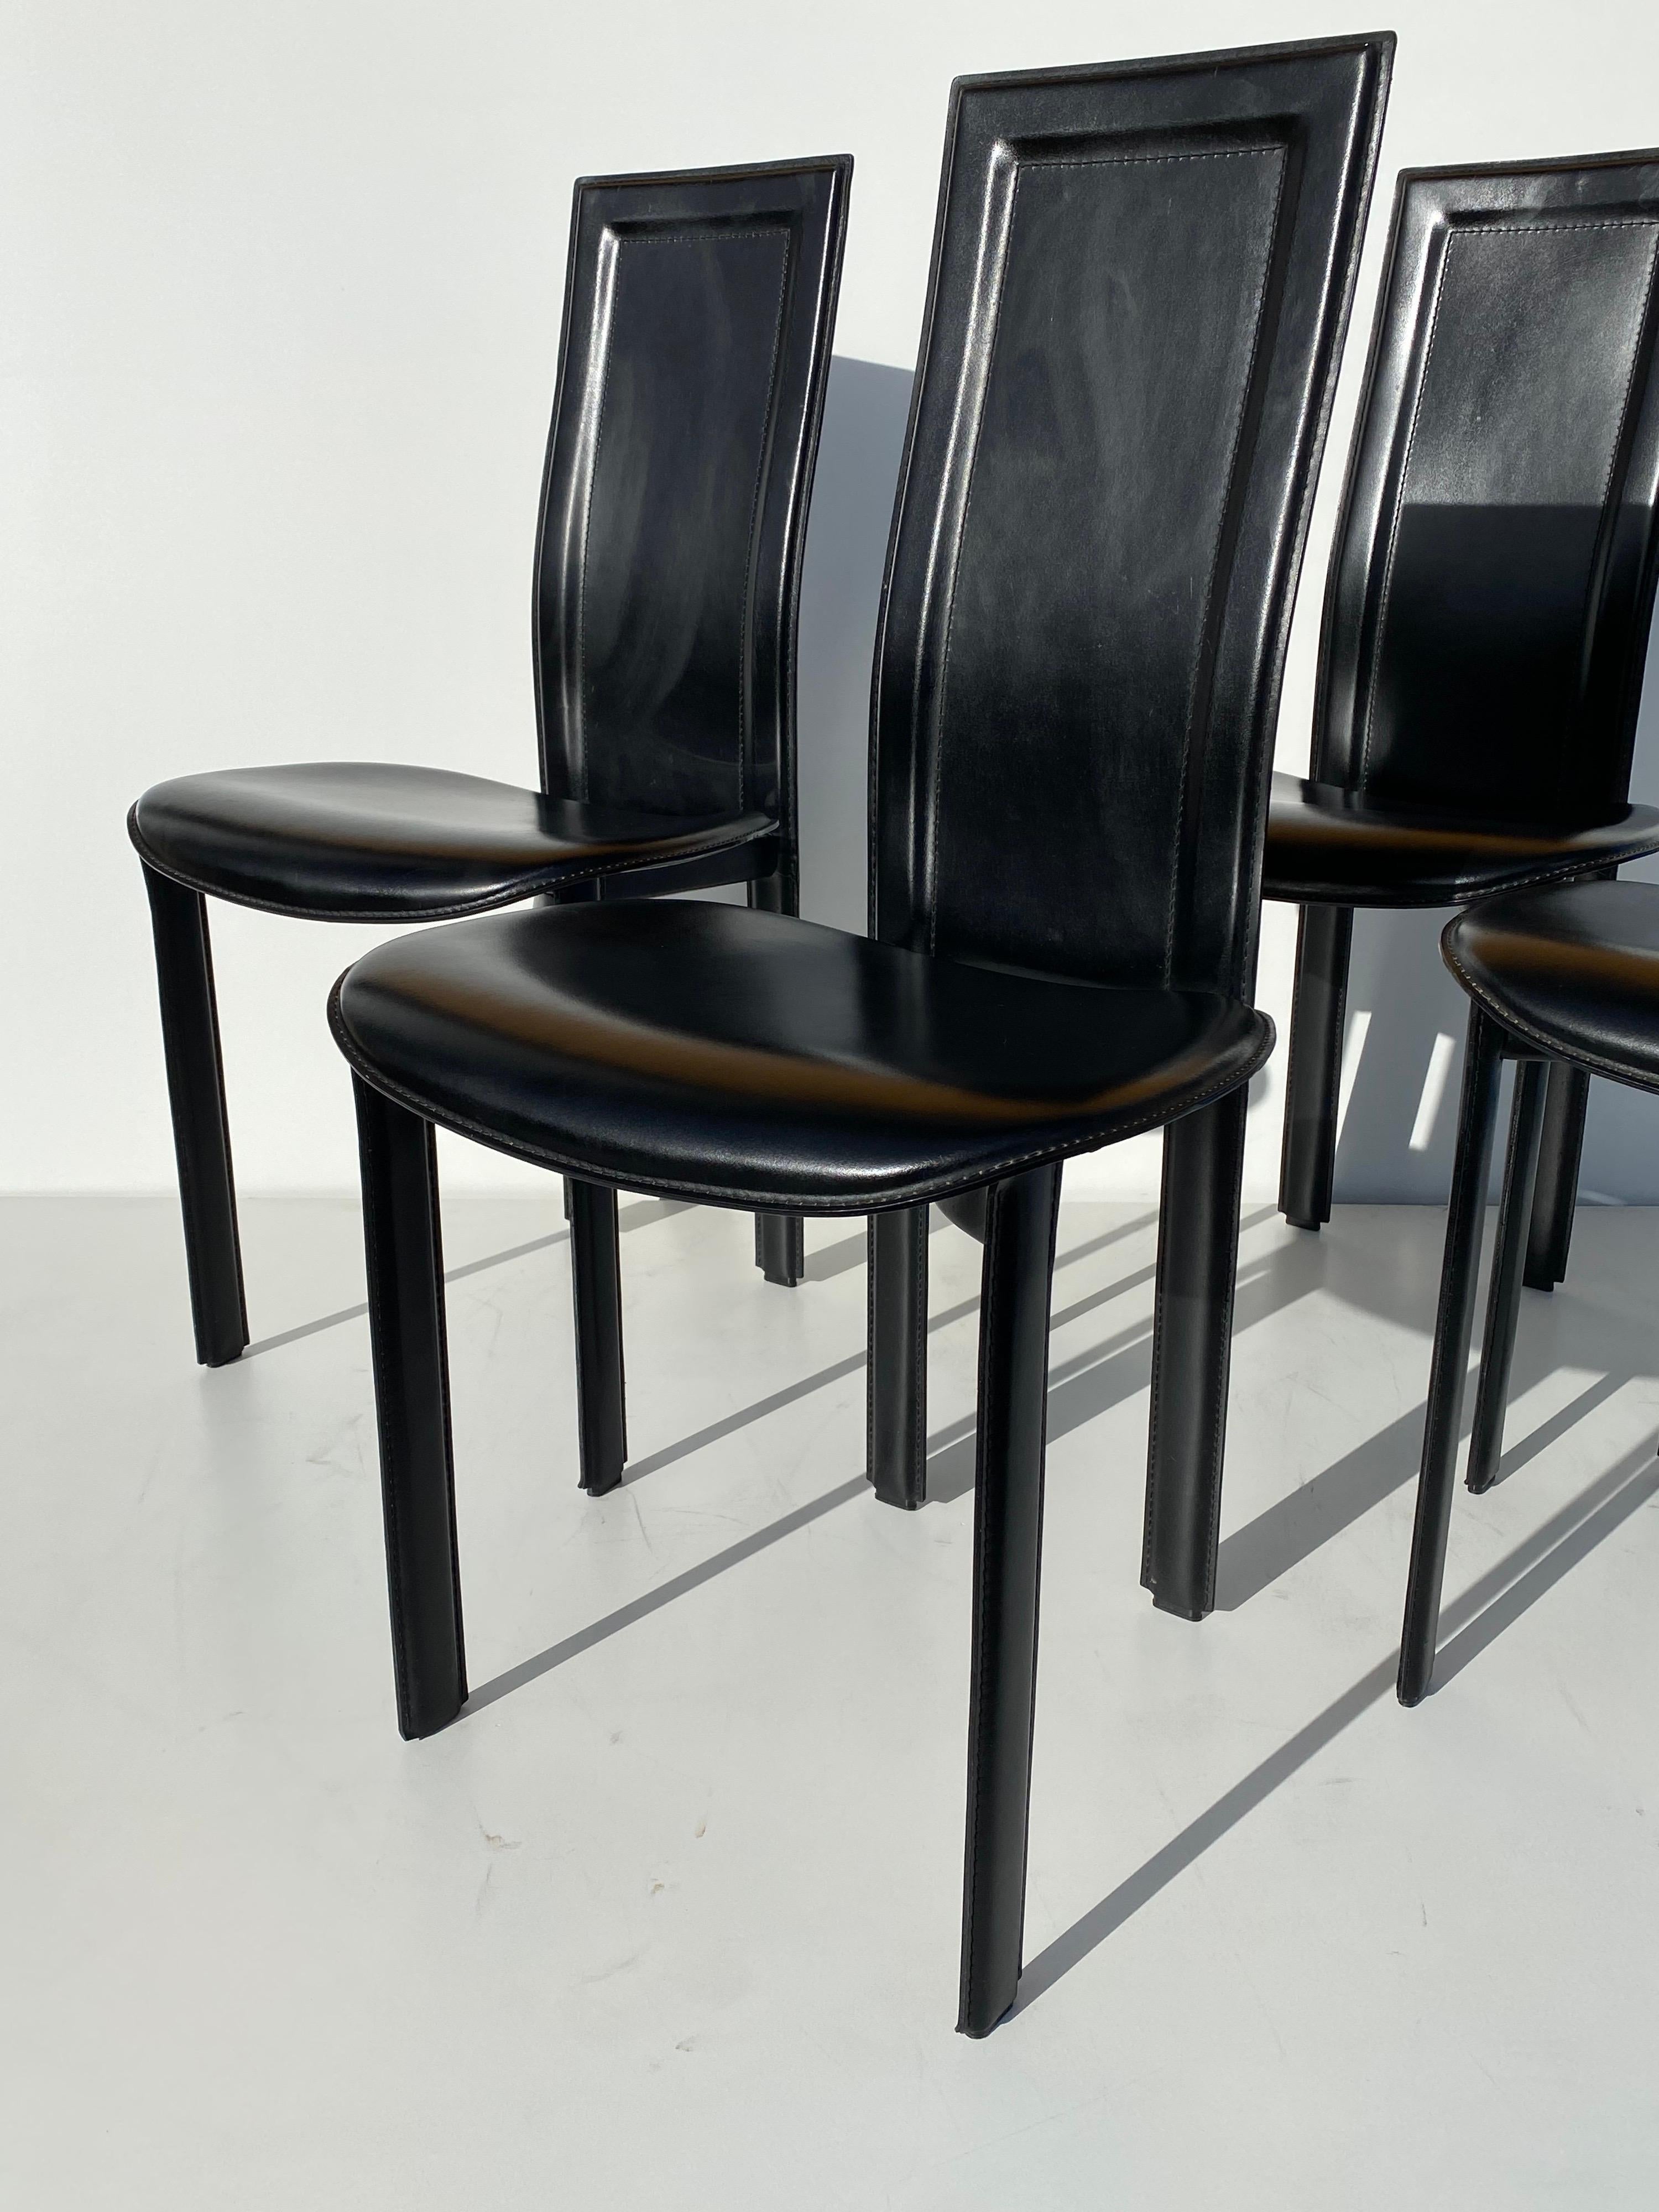 Satz von vier schwarzen Leder-Esszimmerstühlen von Cattelan Italia, ähnlich den Lederstühlen von Mario Bellini für Cassina.